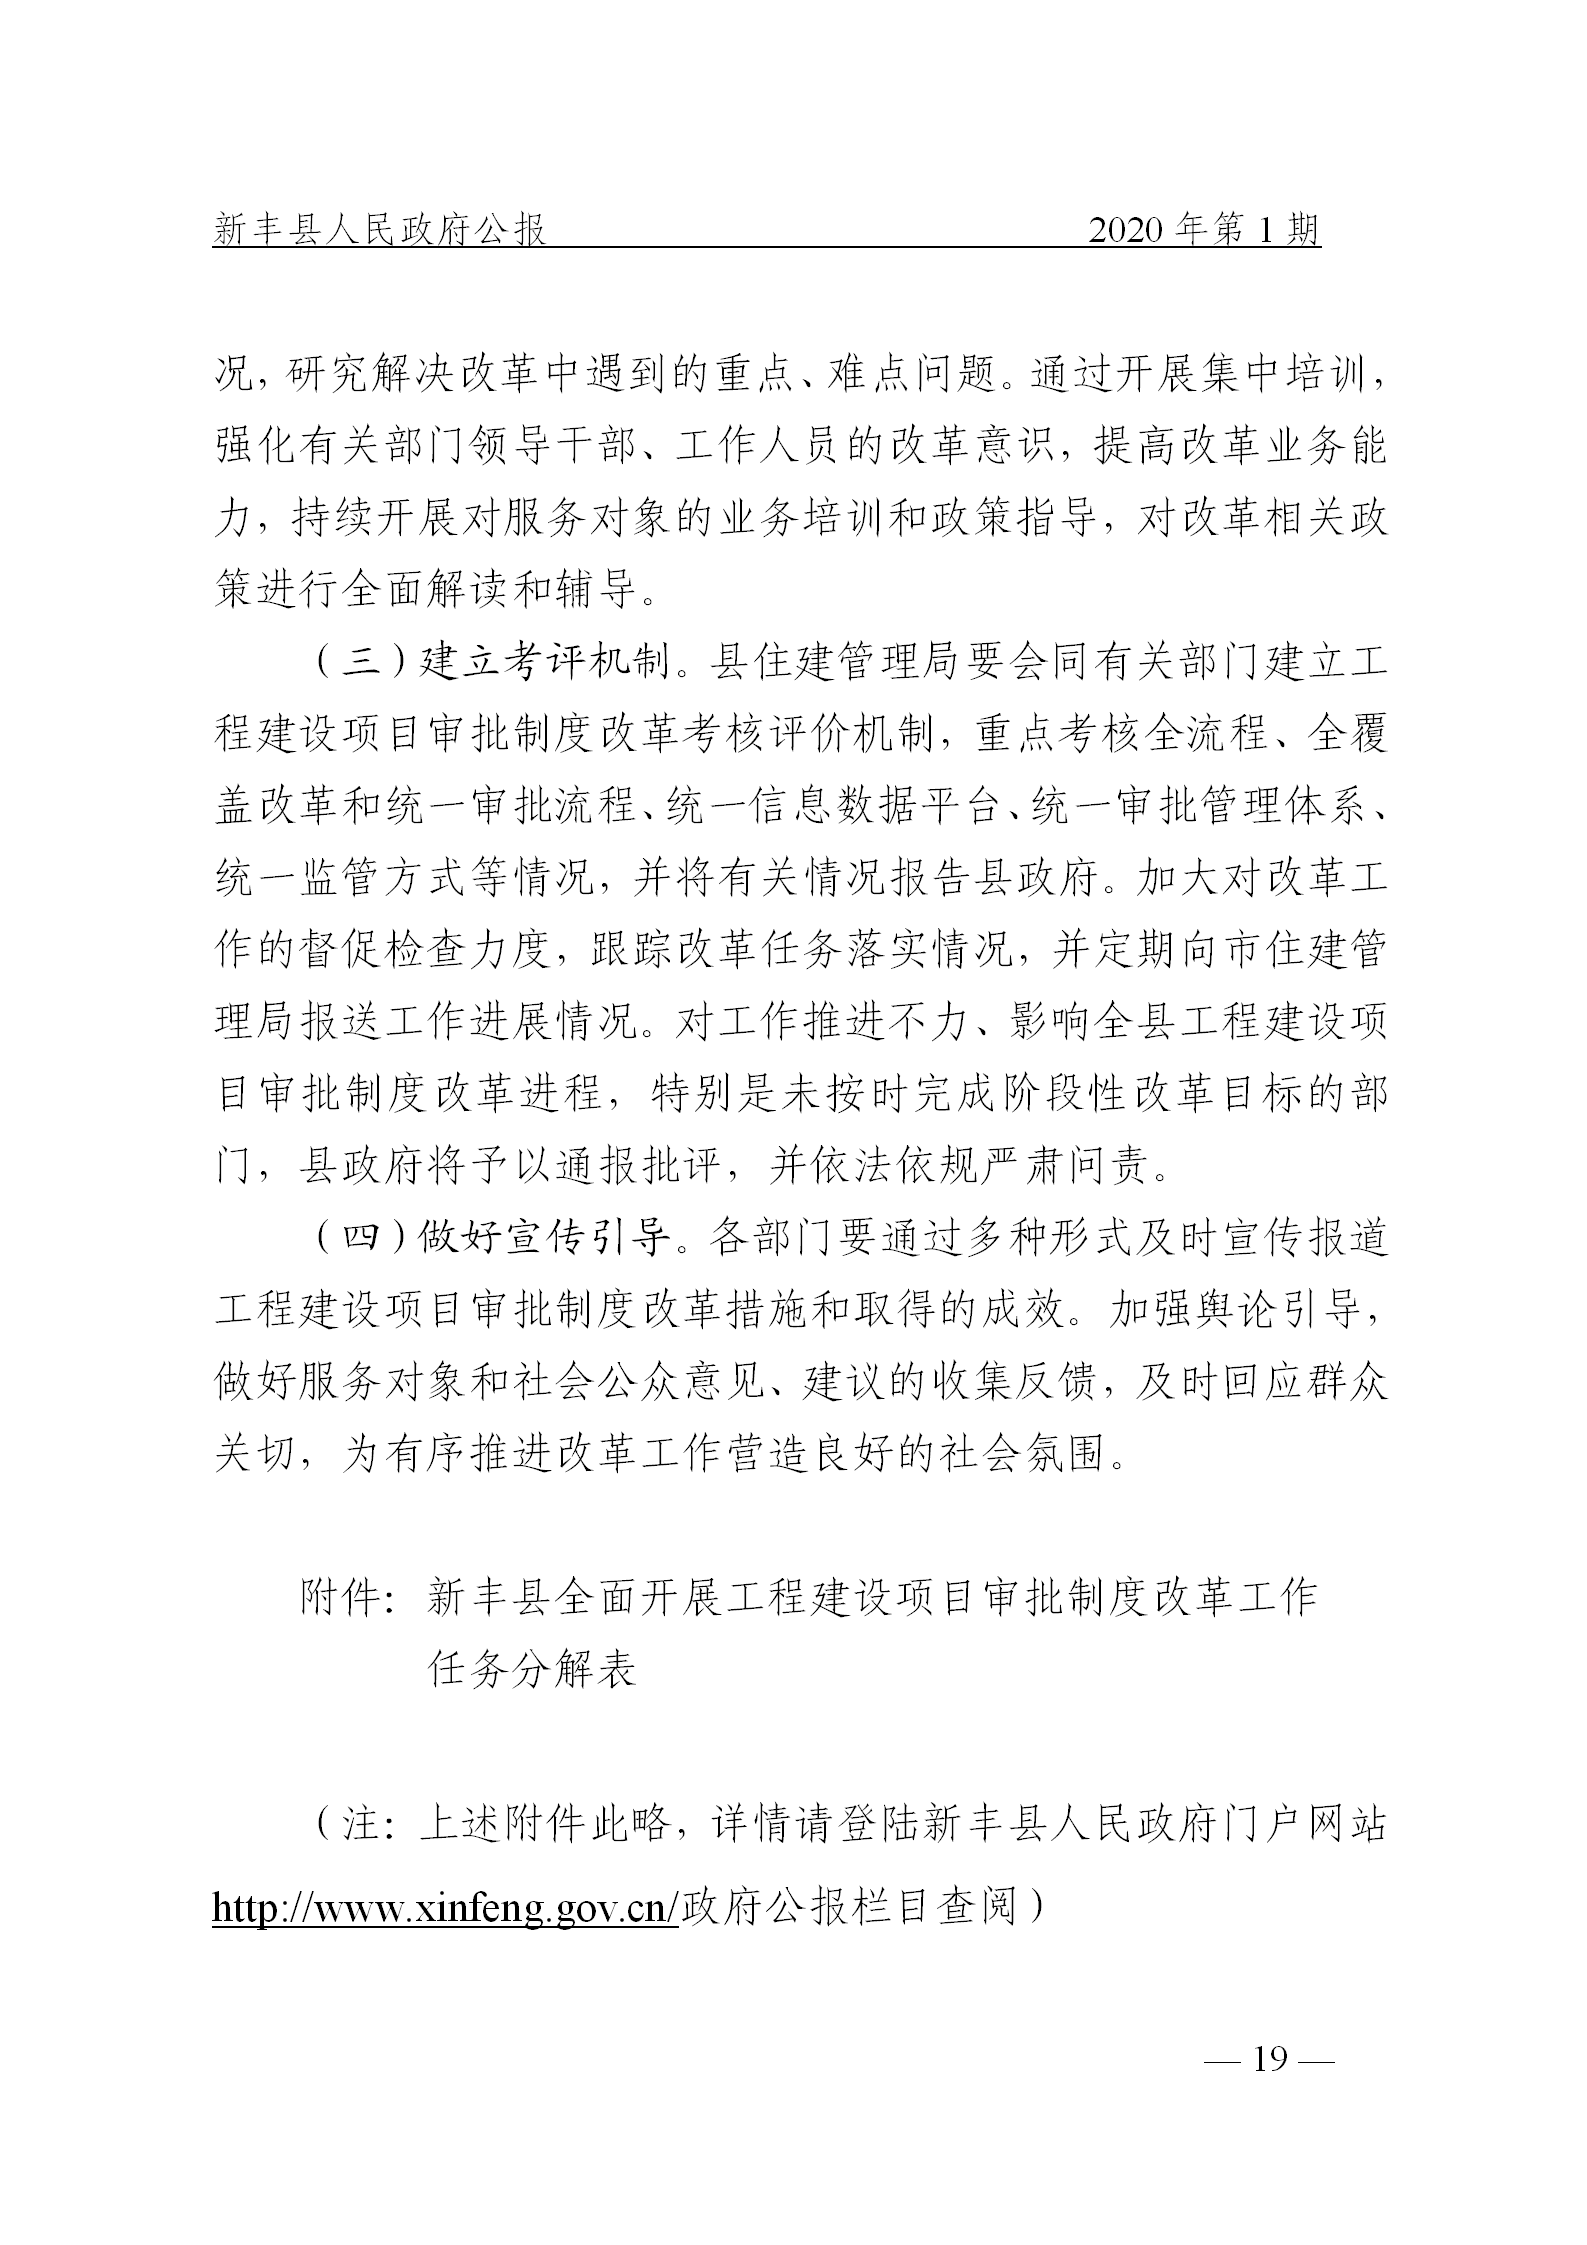 《新丰县人民政府公报》2020年第1期(1)_19.png